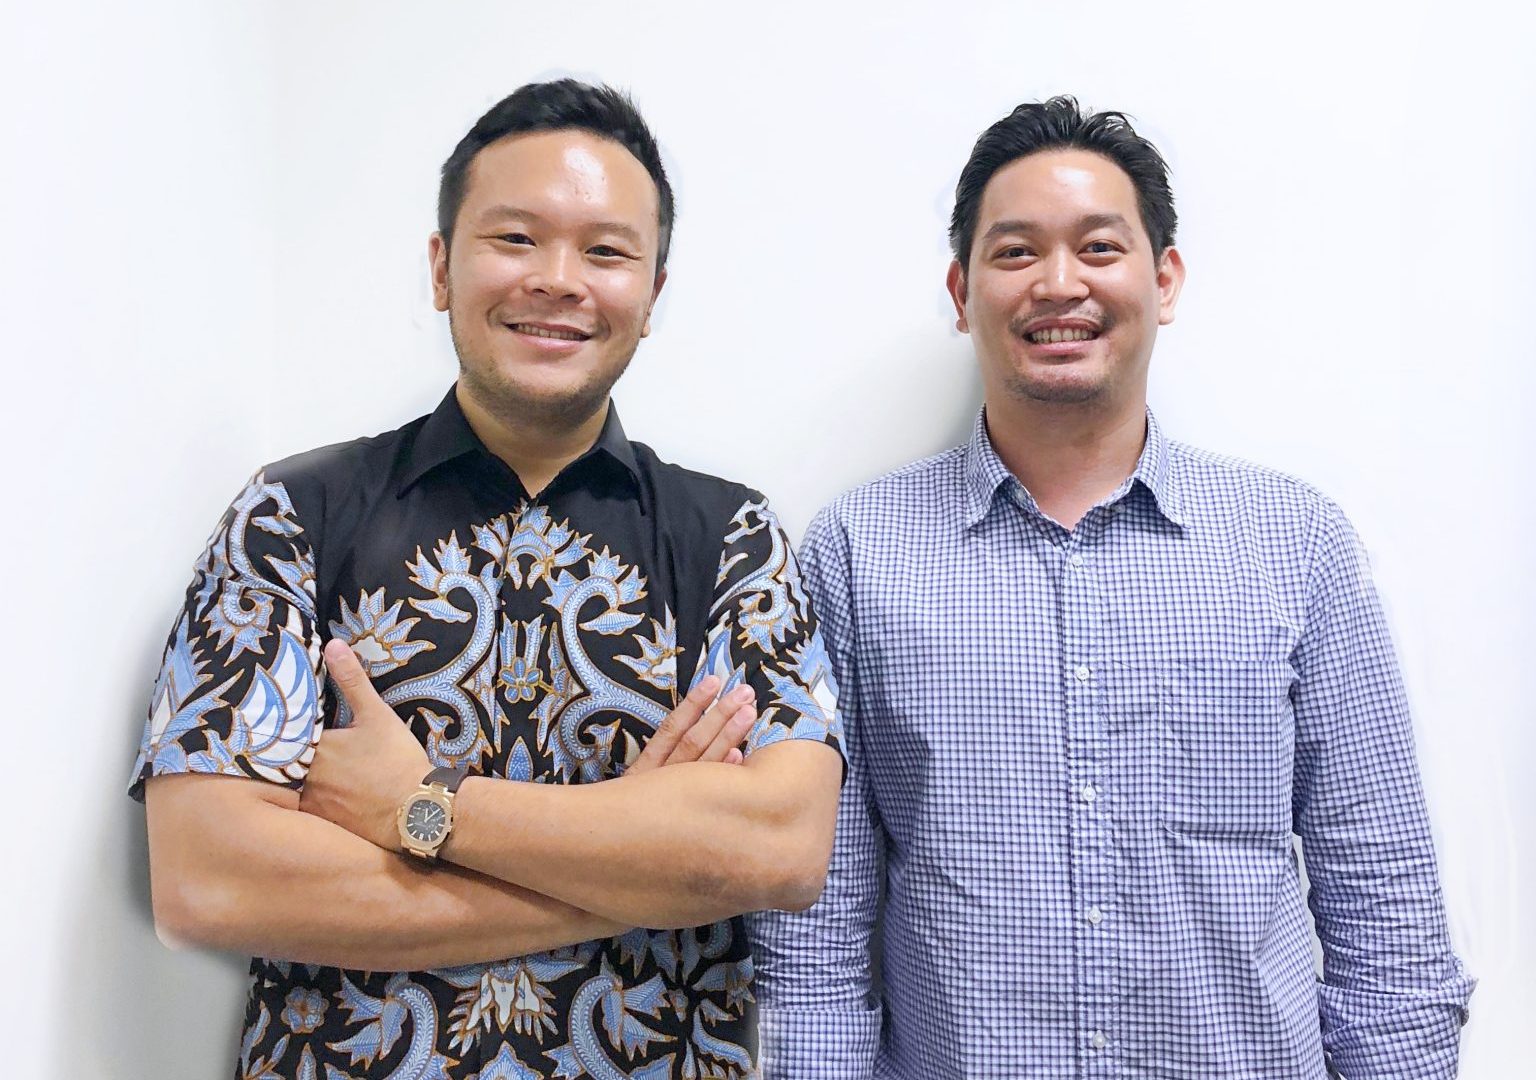 Edward Tirtanata and James Prananto, Co-Founders of Kopi Kenangan.